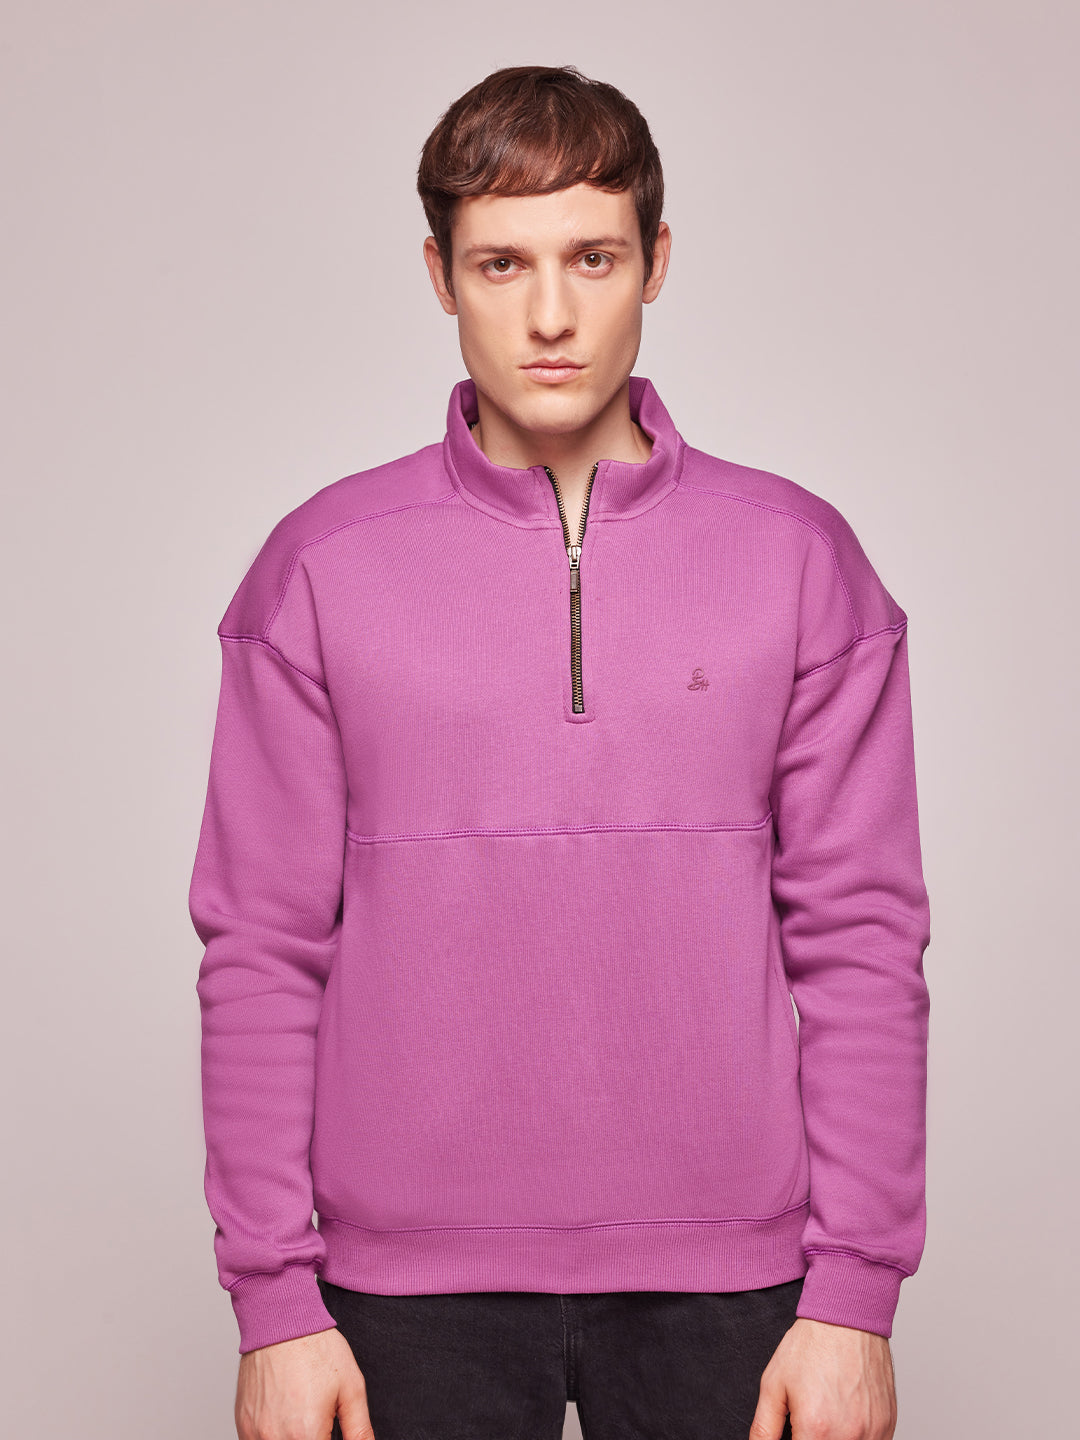 Bombay High Men's Solid Purple Half Zip Knit Sweatshirt